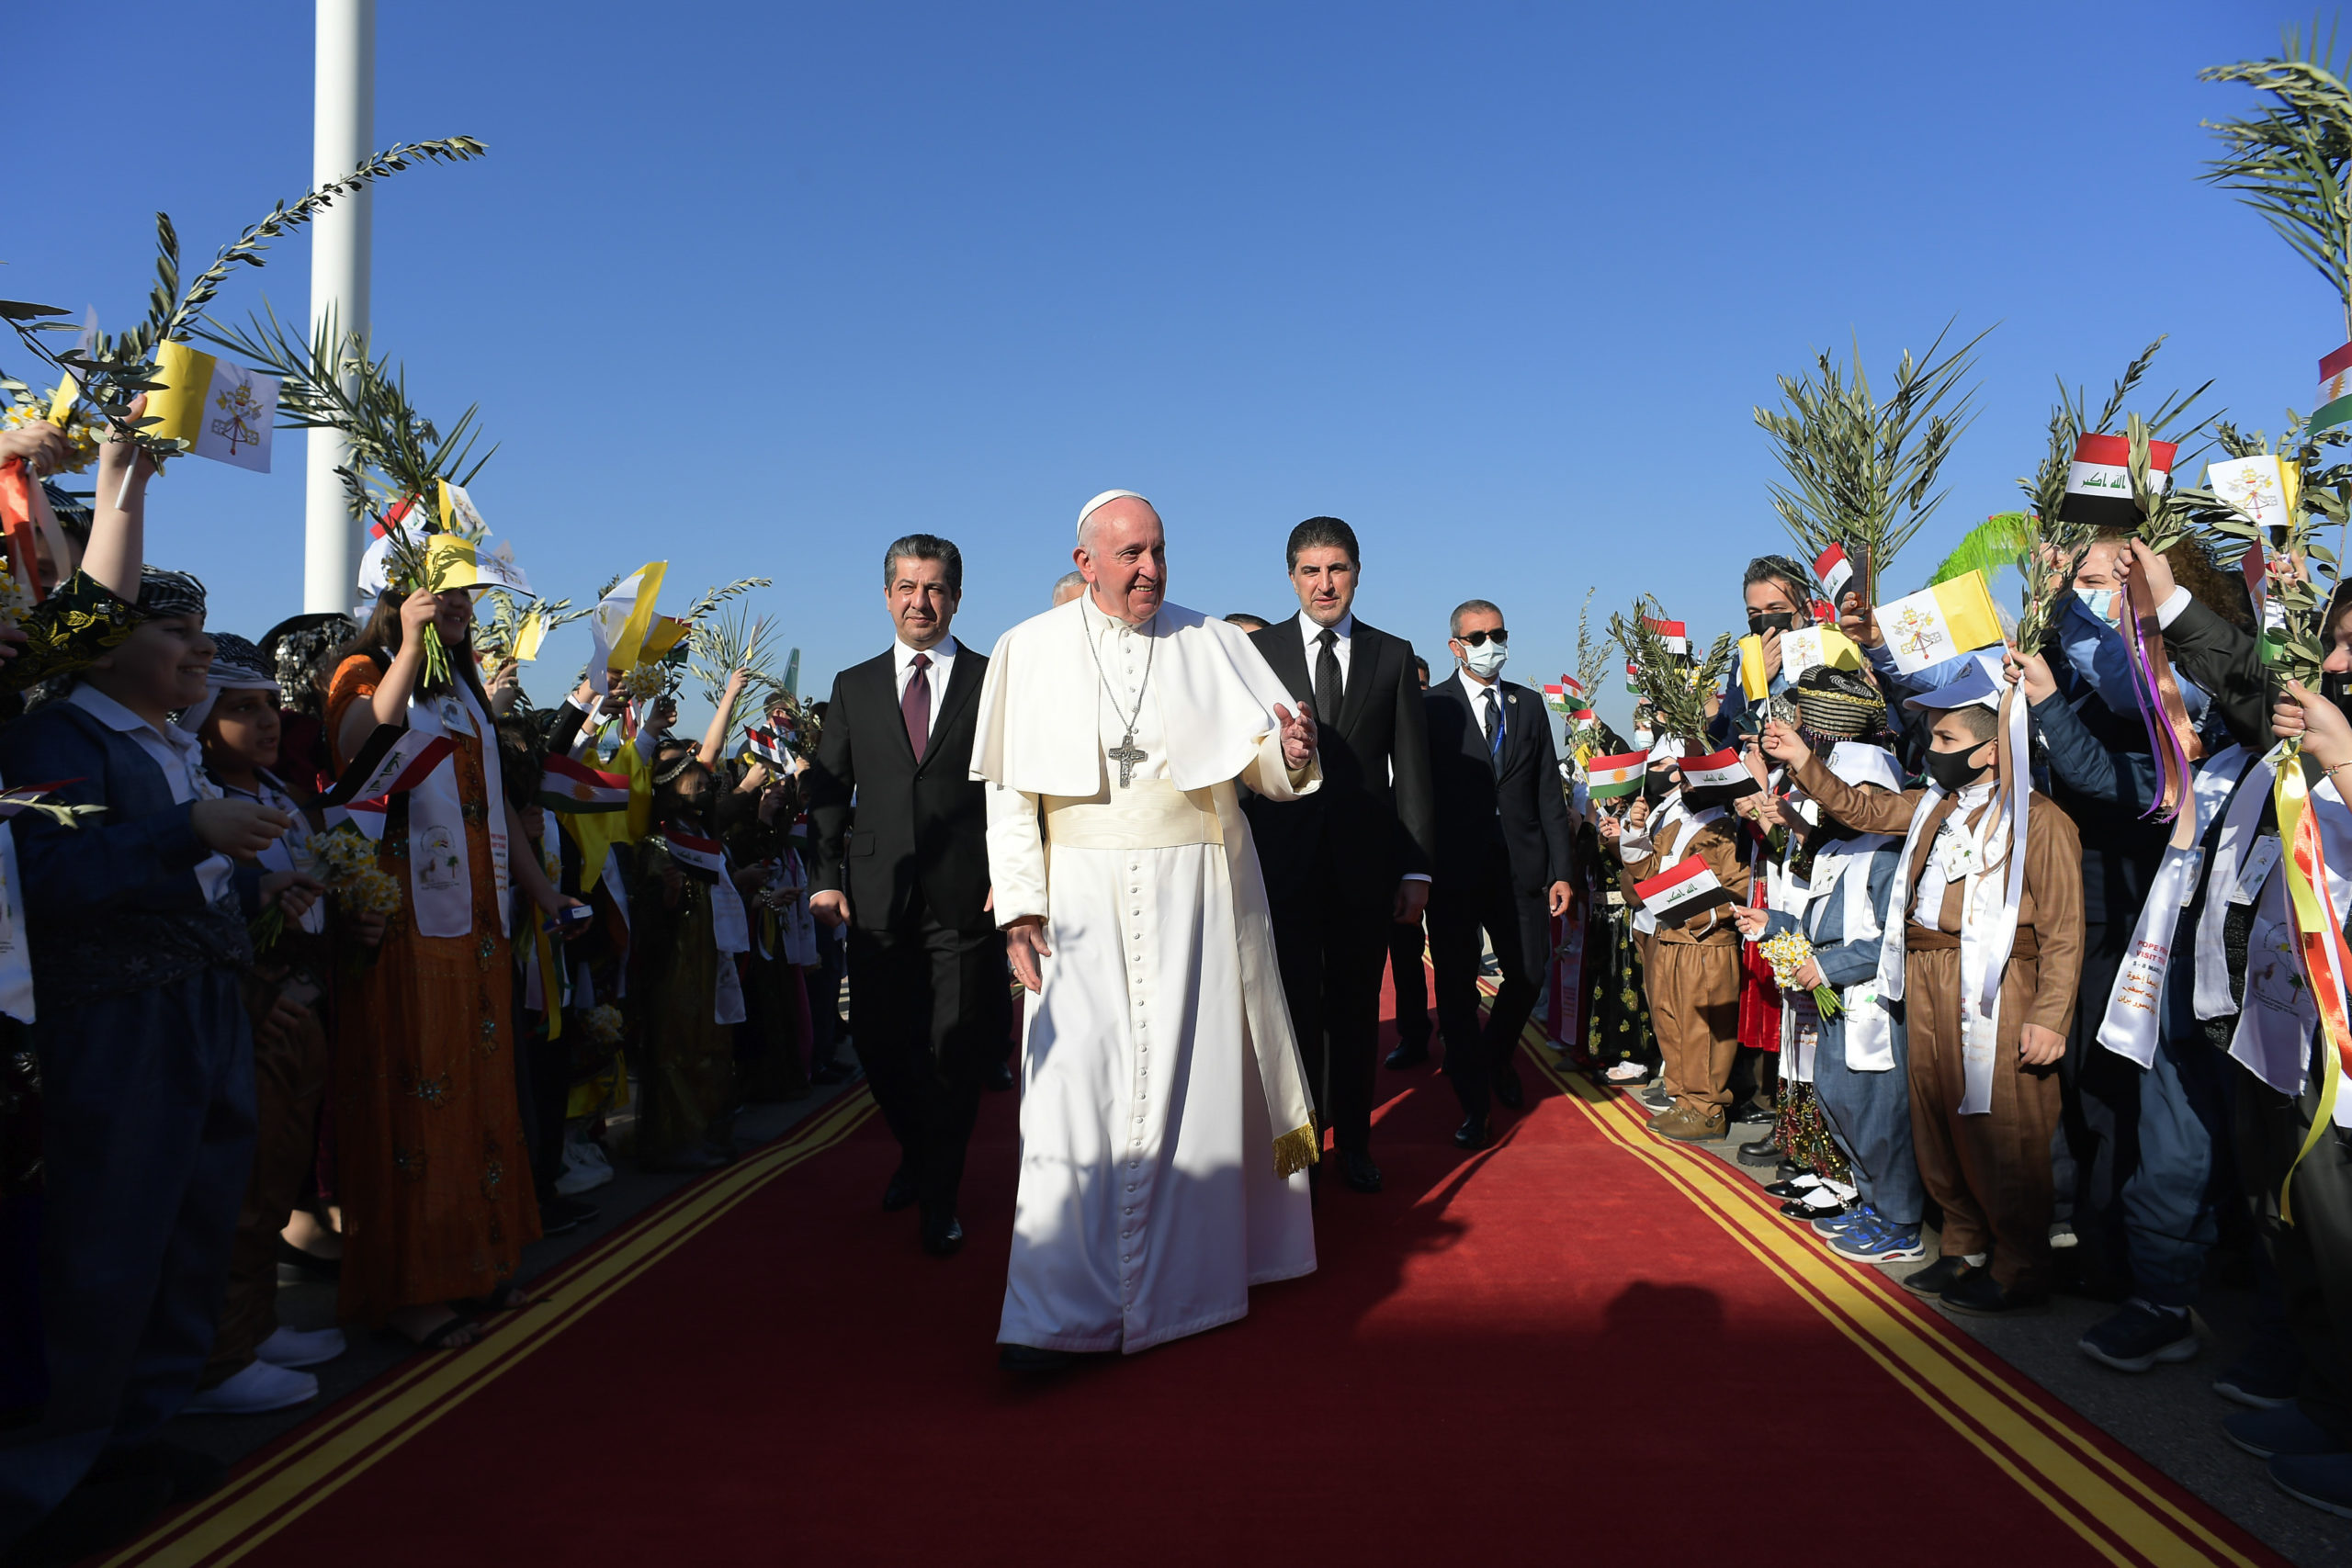 Le pape accueilli par les autorités du Kurdistan irakien, 7 mars 2021, Erbil © Vatican Media